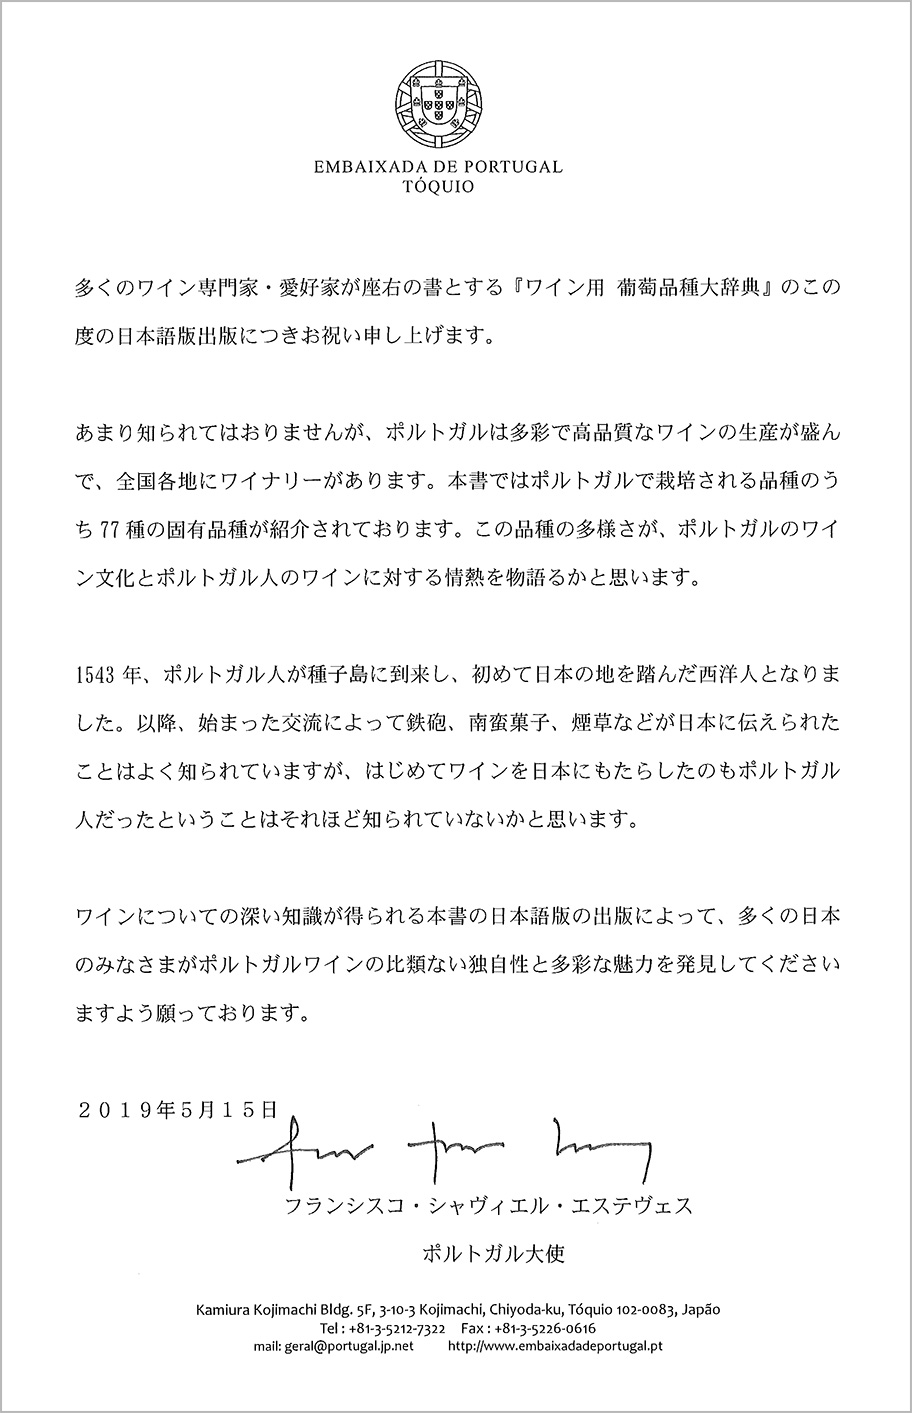 ポルトガル大使様からの推薦メッセージ 日本語